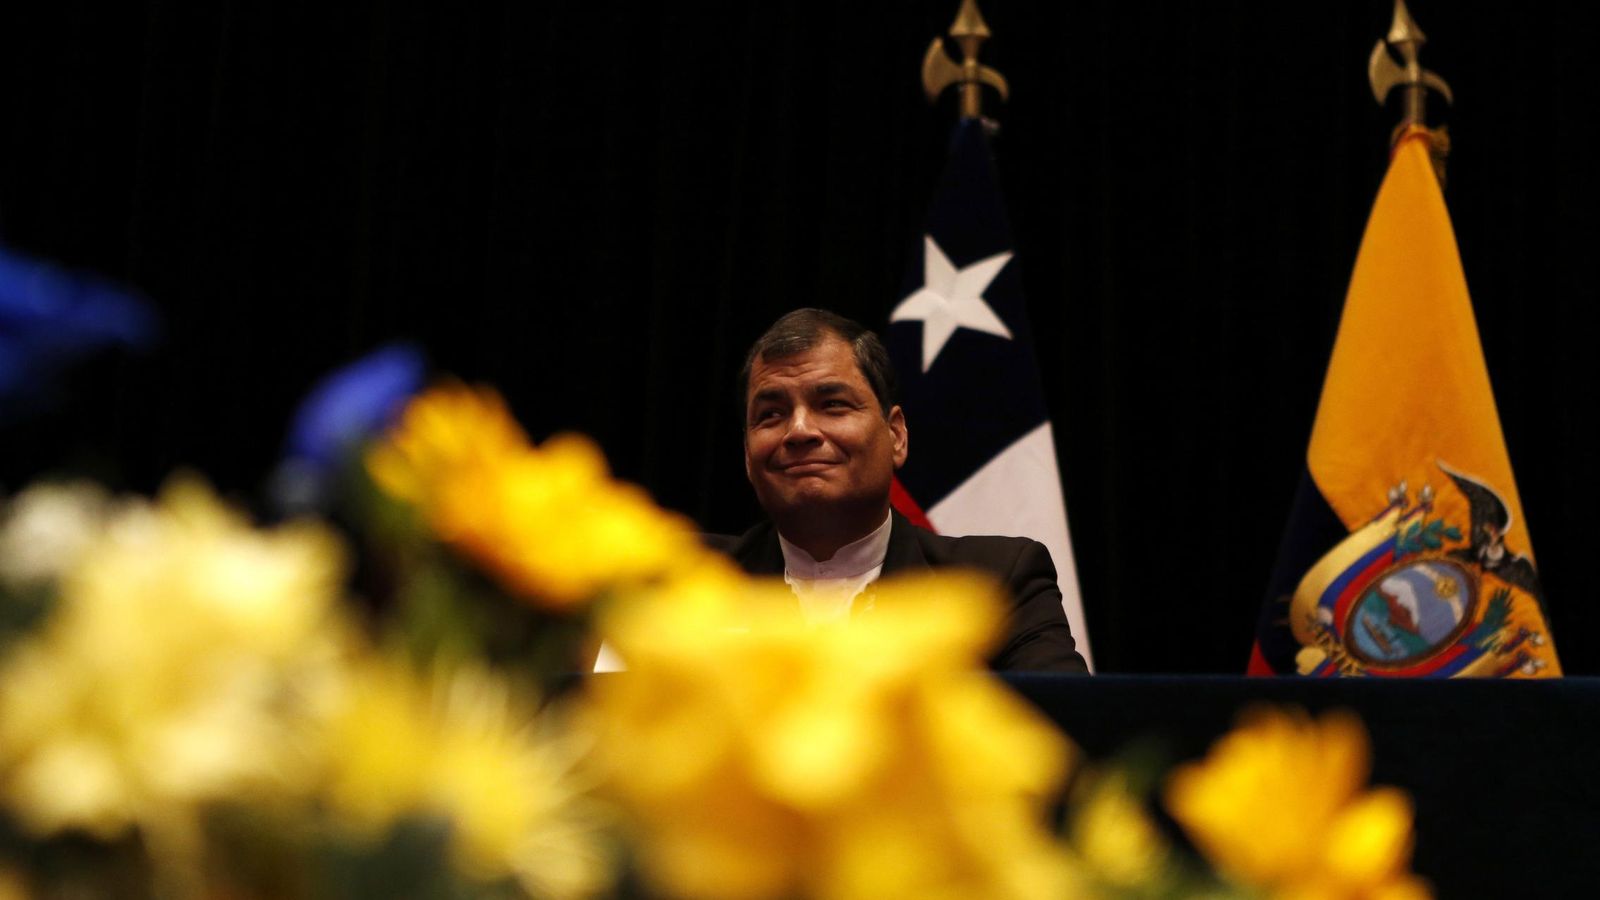 Foto: El presidente de Ecuador, Rafael Correa, durante una ceremonia en la que recibe un doctorado honoris causa, en Santiago, el 14 de mayo de 2014 (Reuters). 